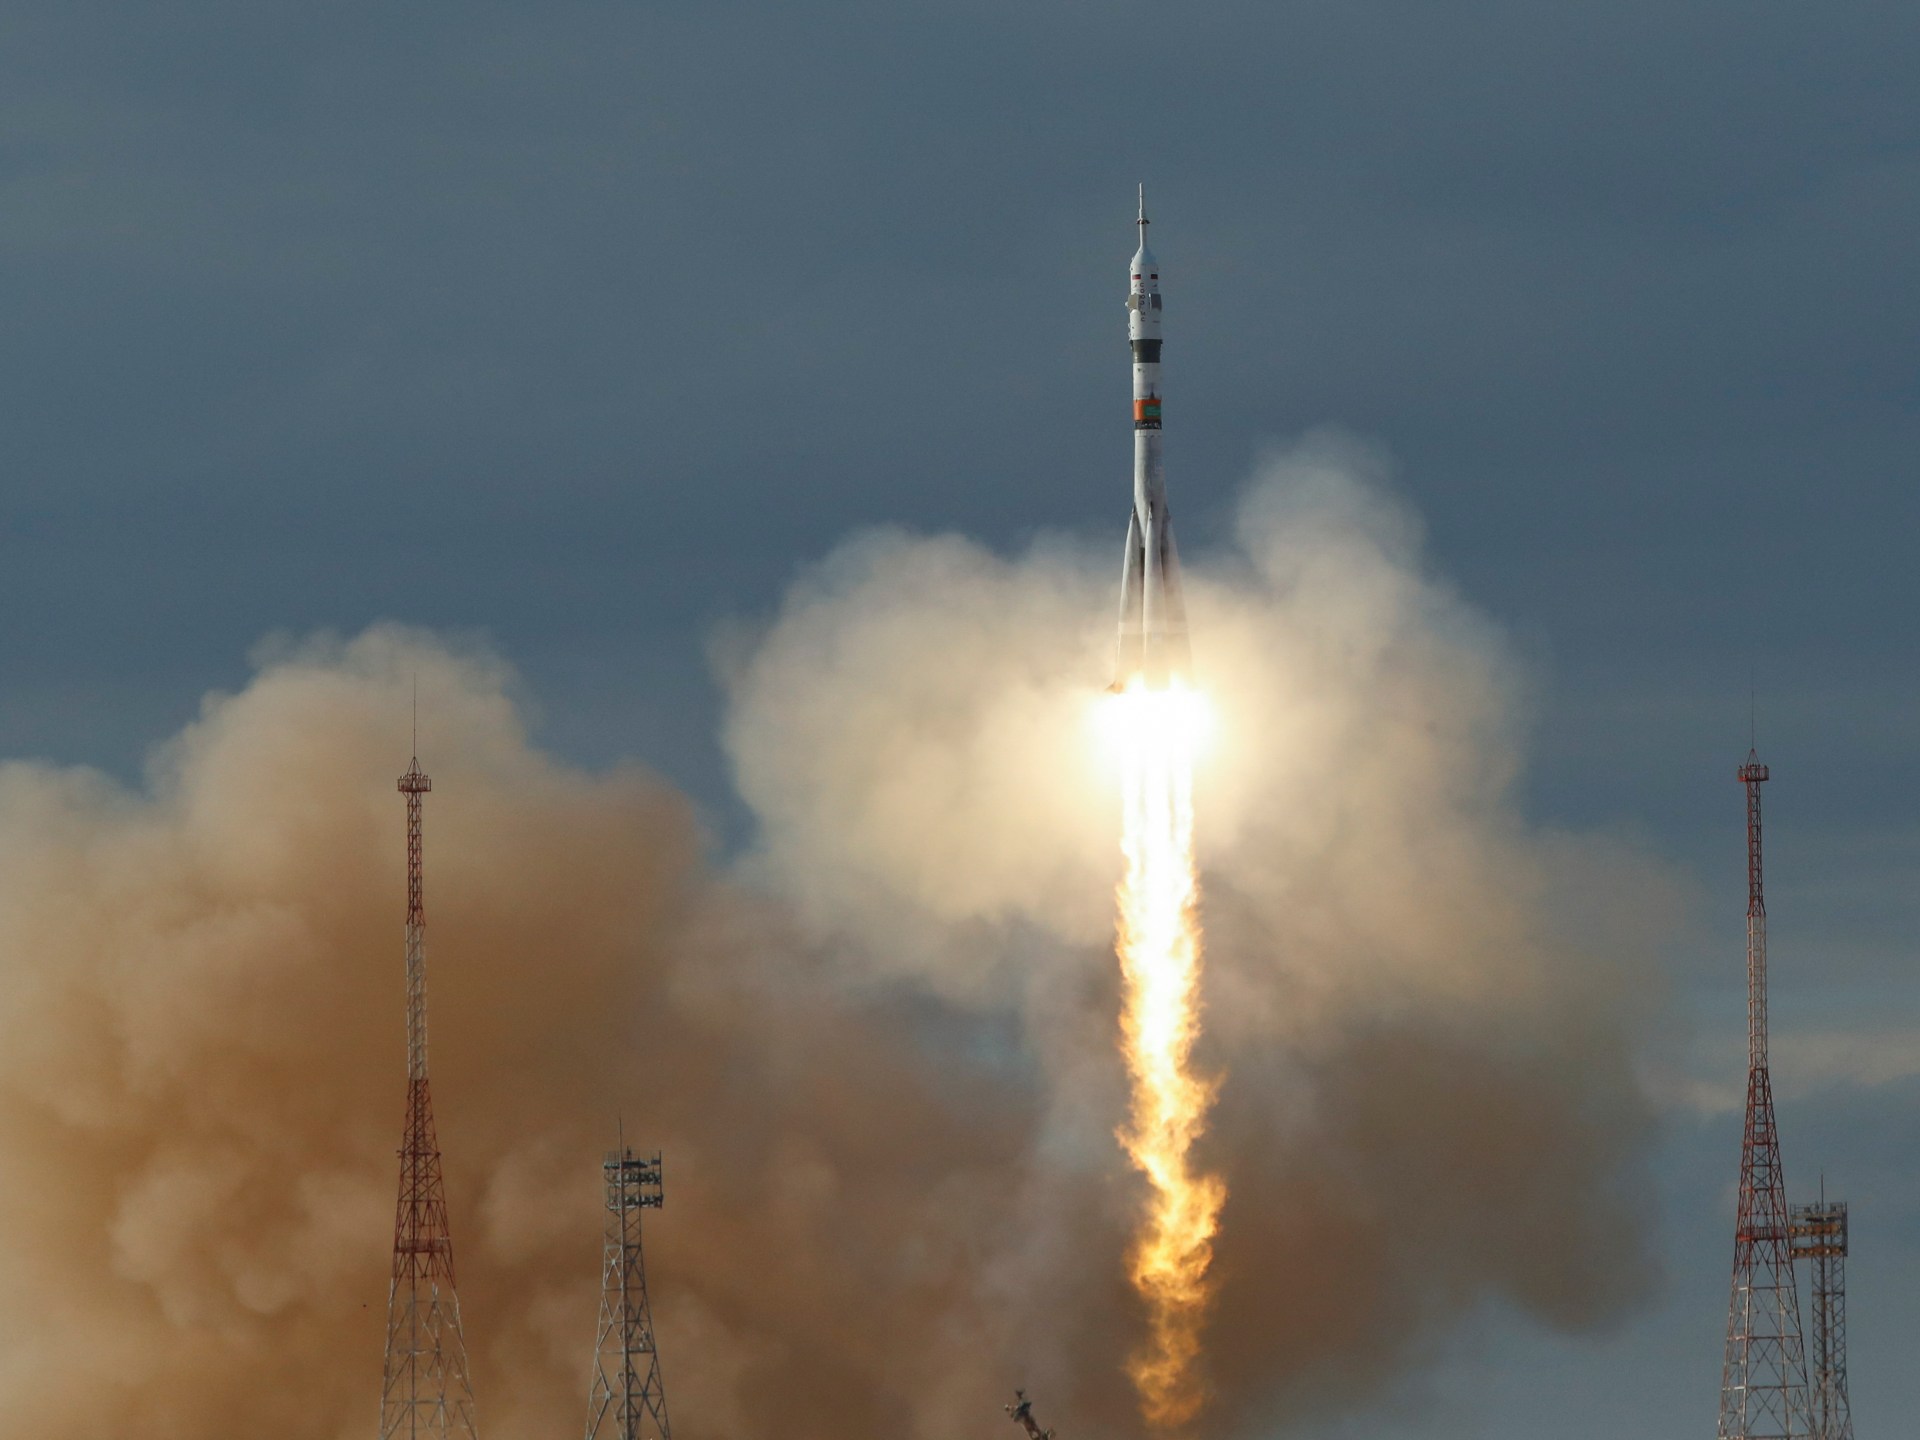 انطلق صاروخ سويوز روسي يحمل 3 رواد فضاء إلى محطة الفضاء الدولية بعد أيام قليلة |  أخبار الفضاء